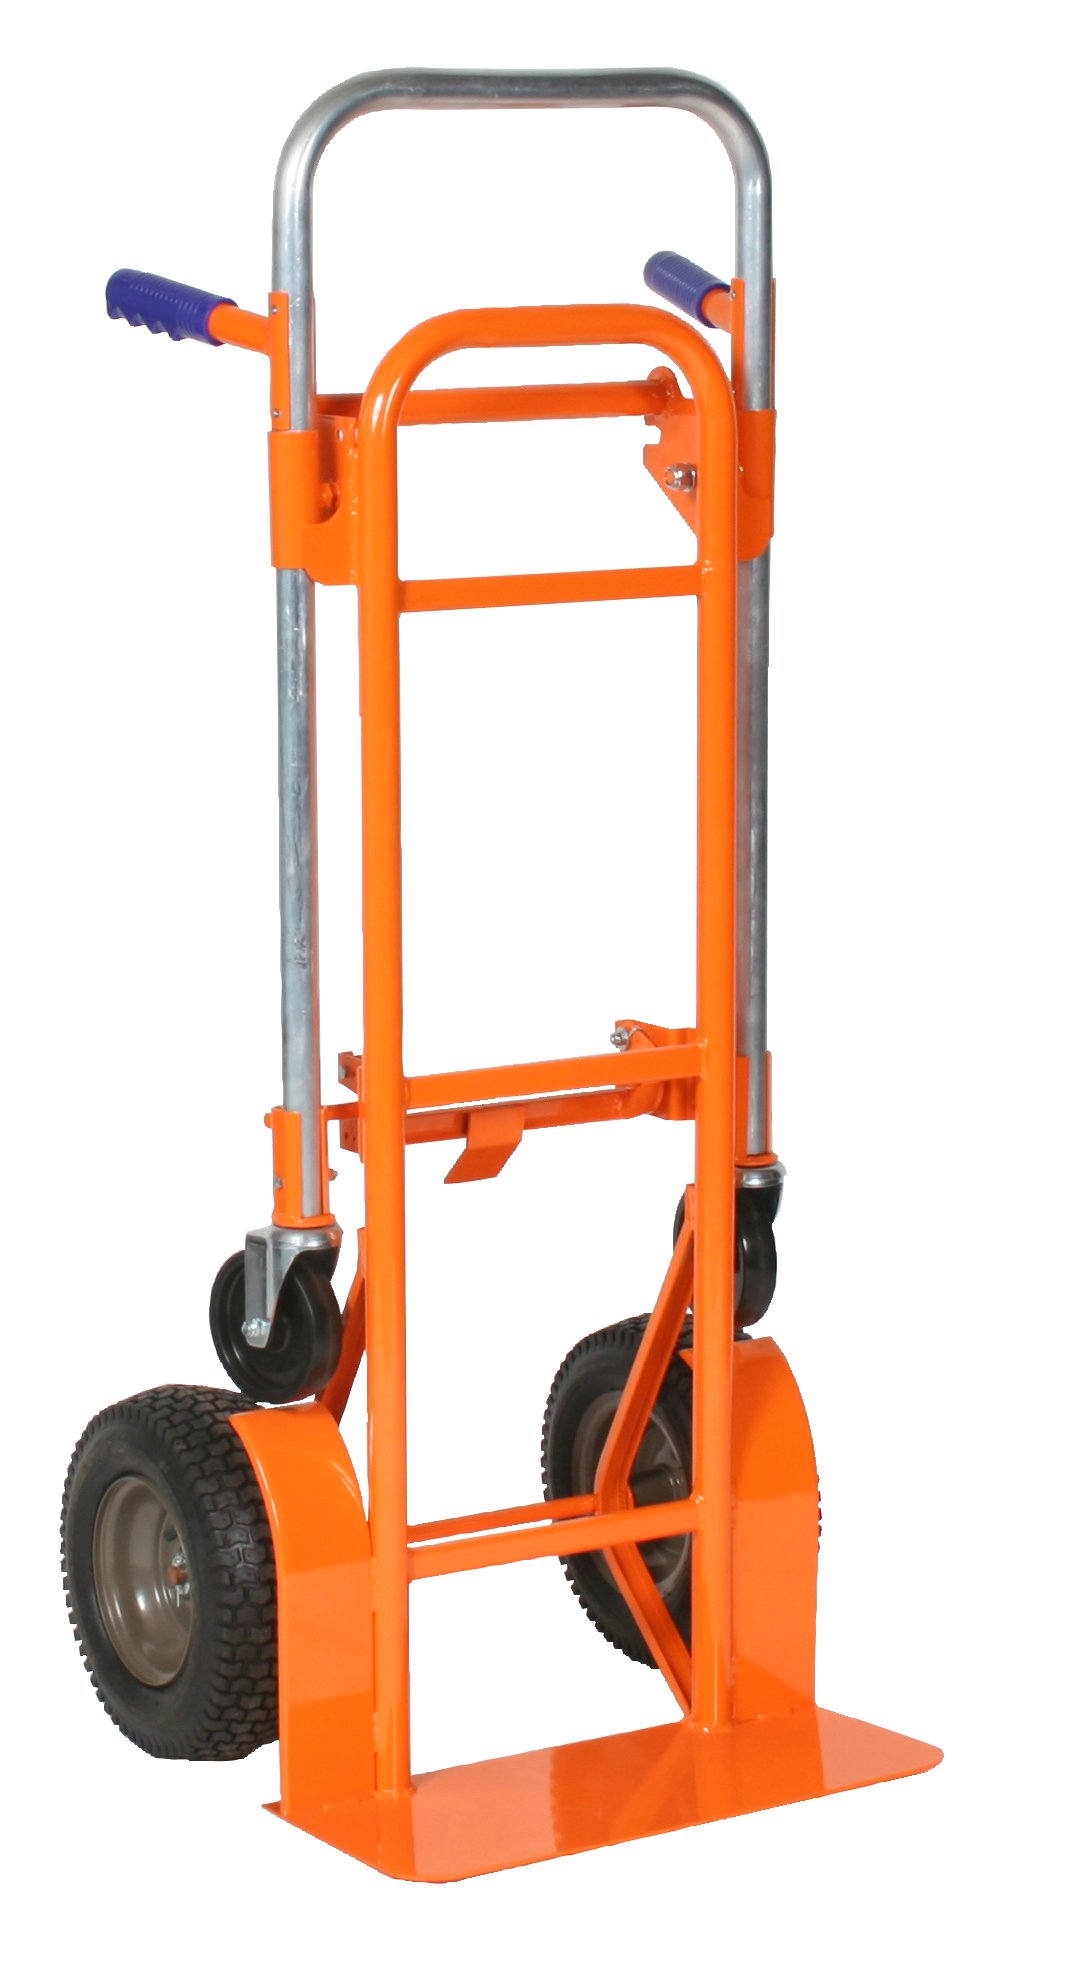 Hand Trucks R Us  Wesco Orange Crush Convertible Hand Truck  12 inch Wheels  Item: 272997